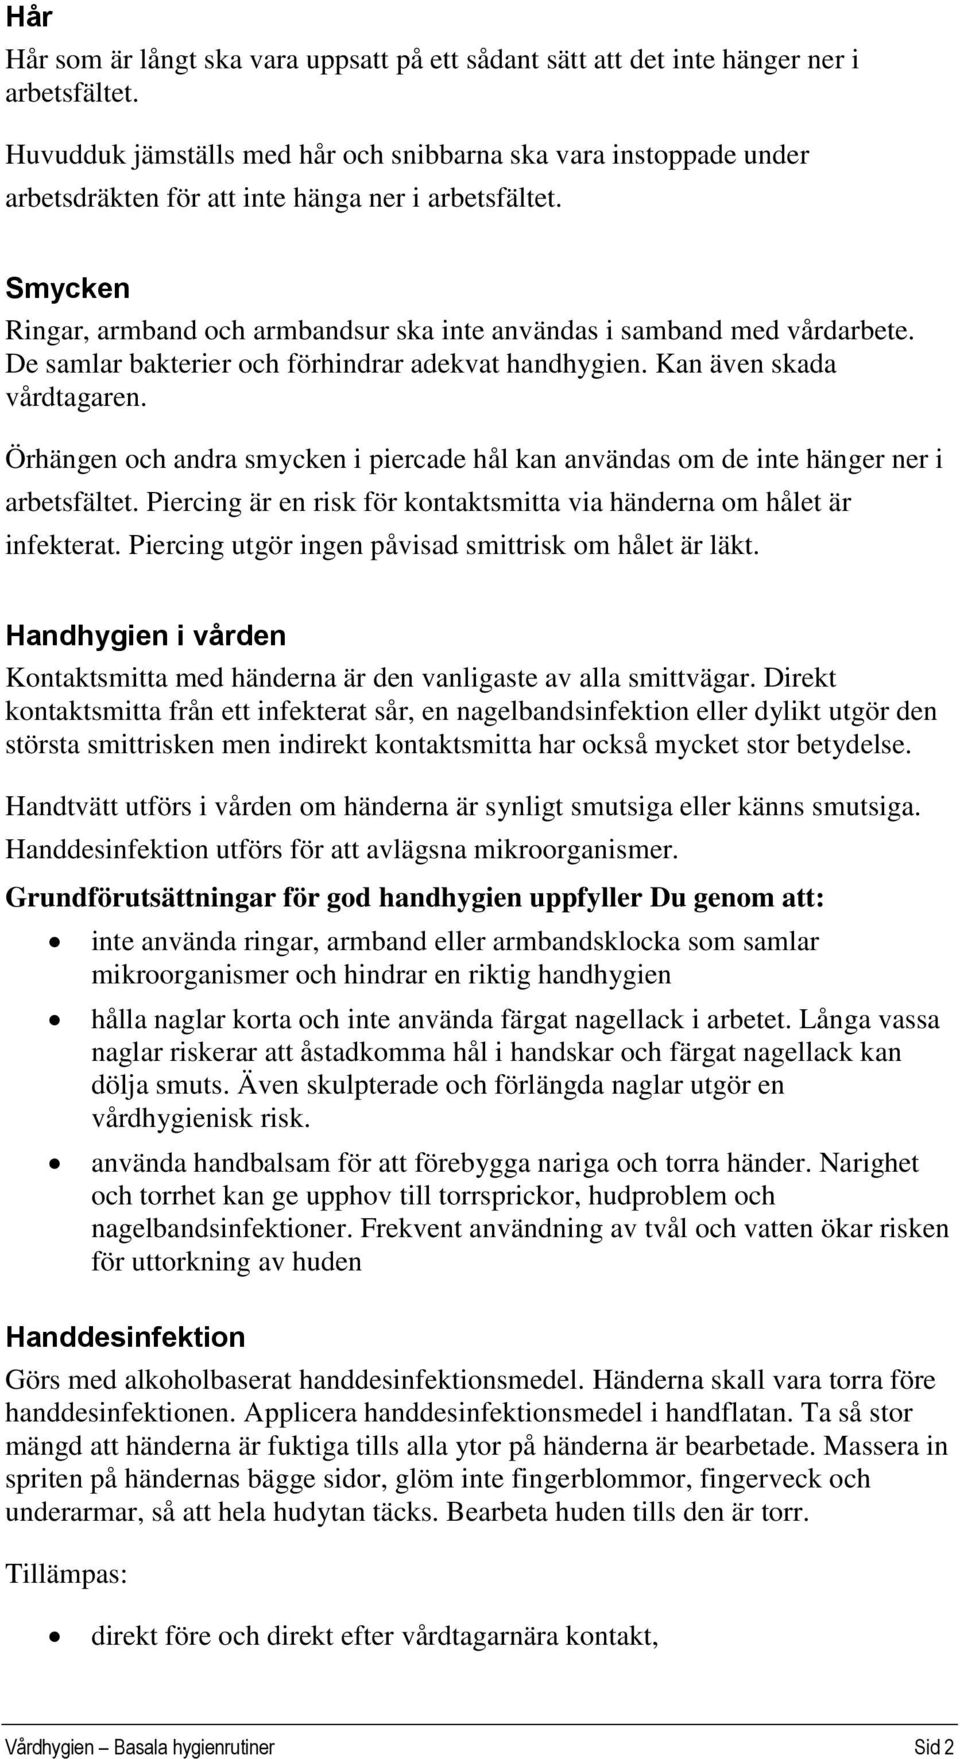 Vårdhygien - Basala hygienrutiner - PDF Free Download